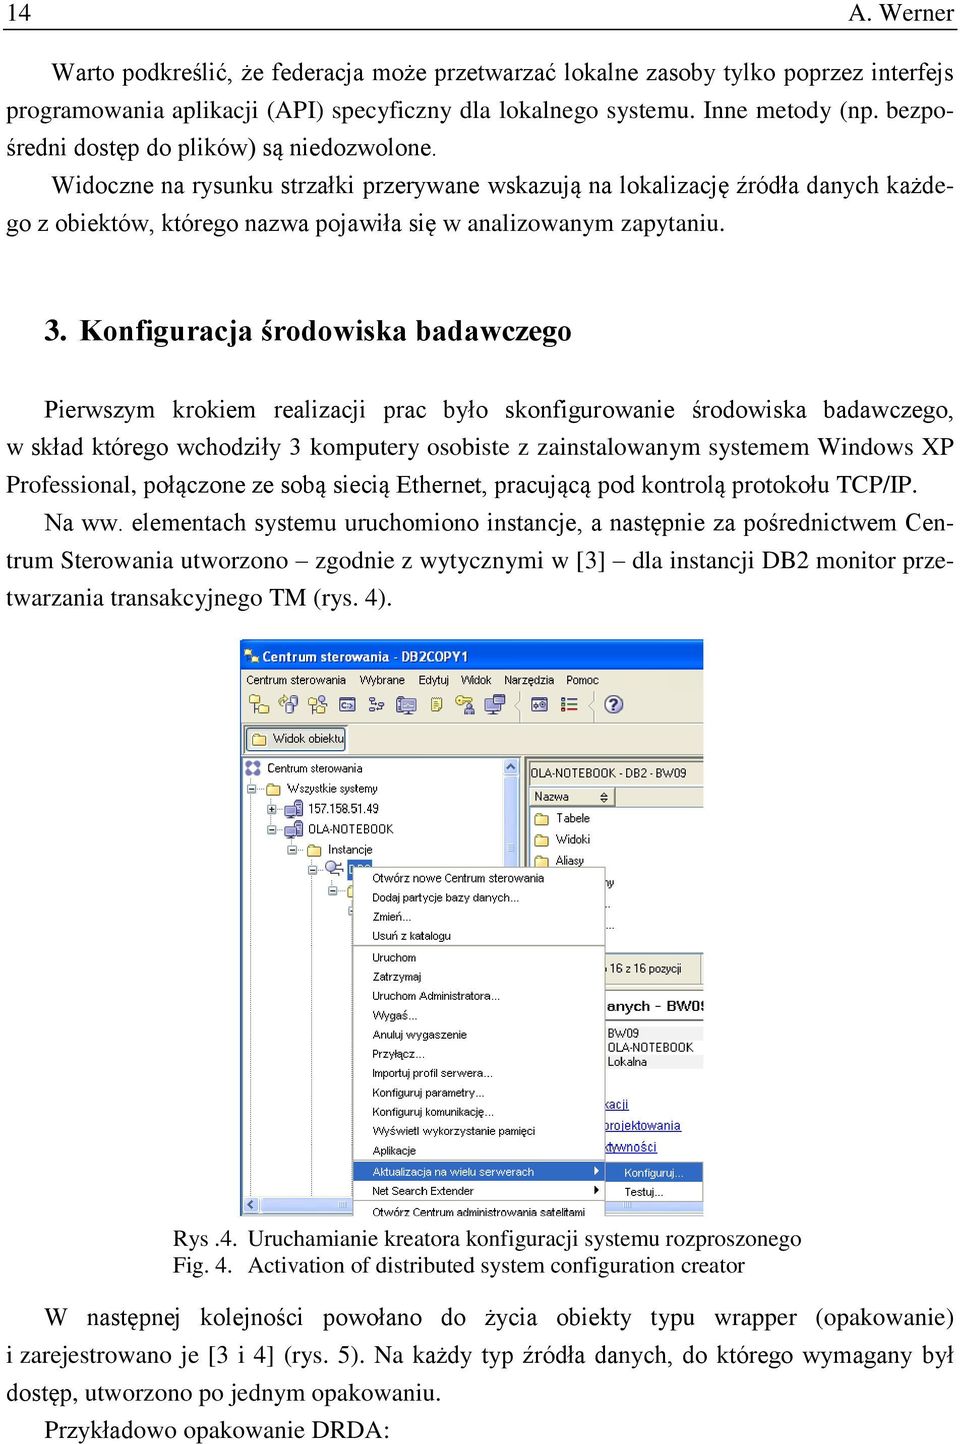 Konfiguracja środowiska badawczego Pierwszym krokiem realizacji prac było skonfigurowanie środowiska badawczego, w skład którego wchodziły 3 komputery osobiste z zainstalowanym systemem Windows XP